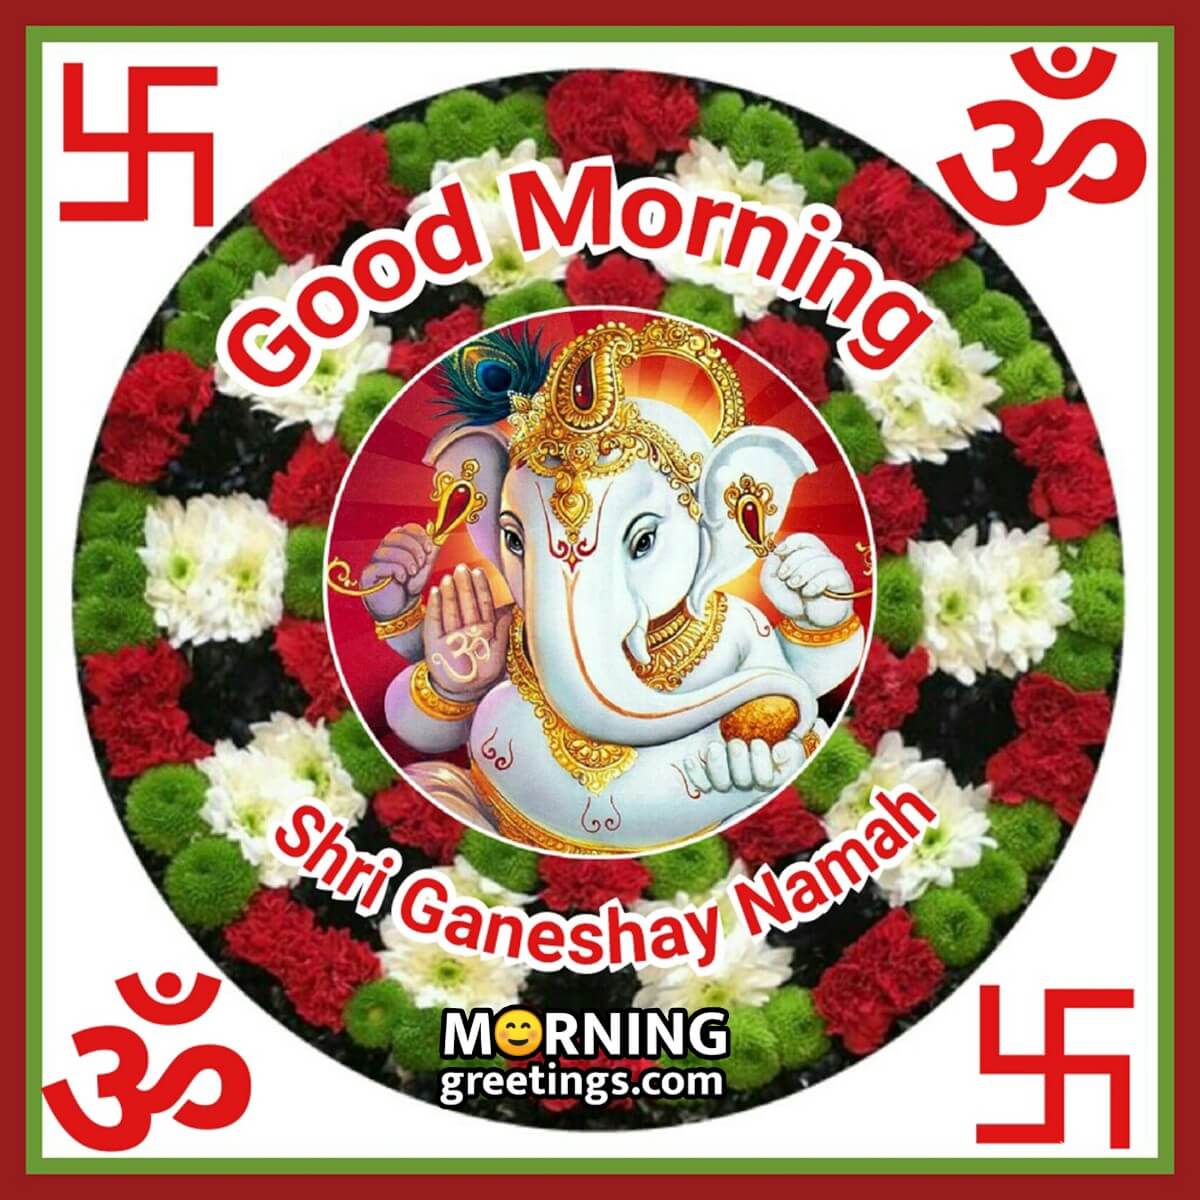 Good Morning Shri Ganeshay Namah